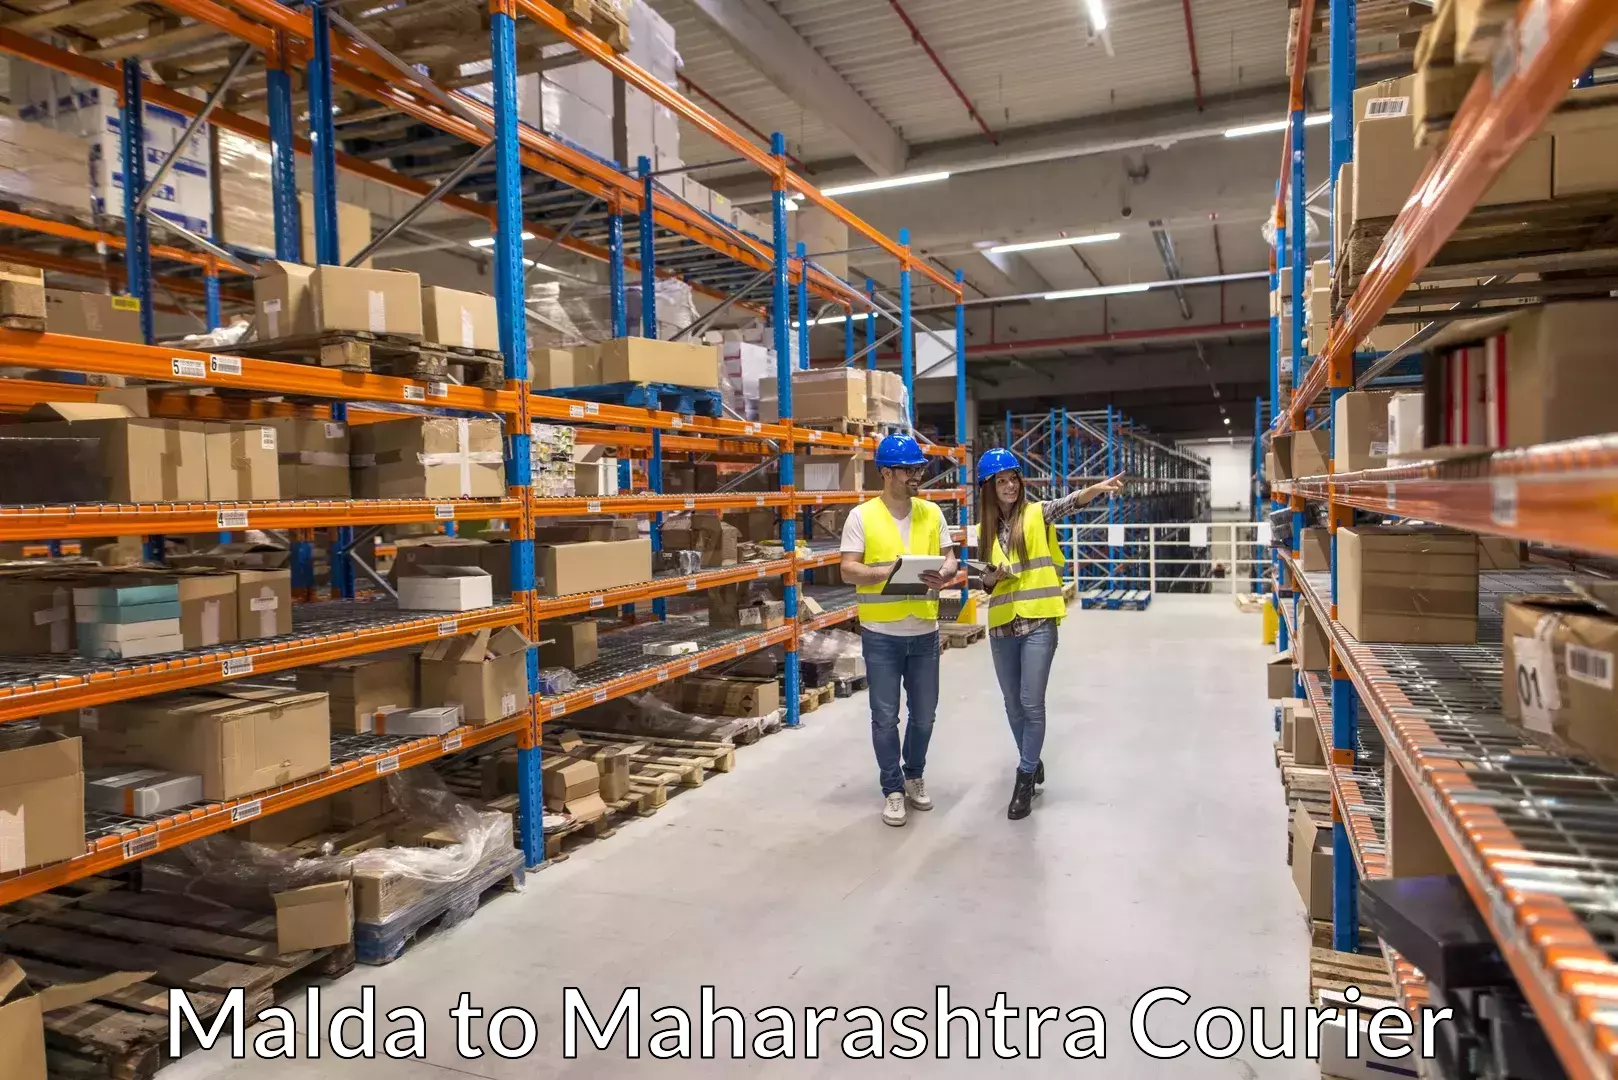 Luggage shipping specialists Malda to Walchandnagar